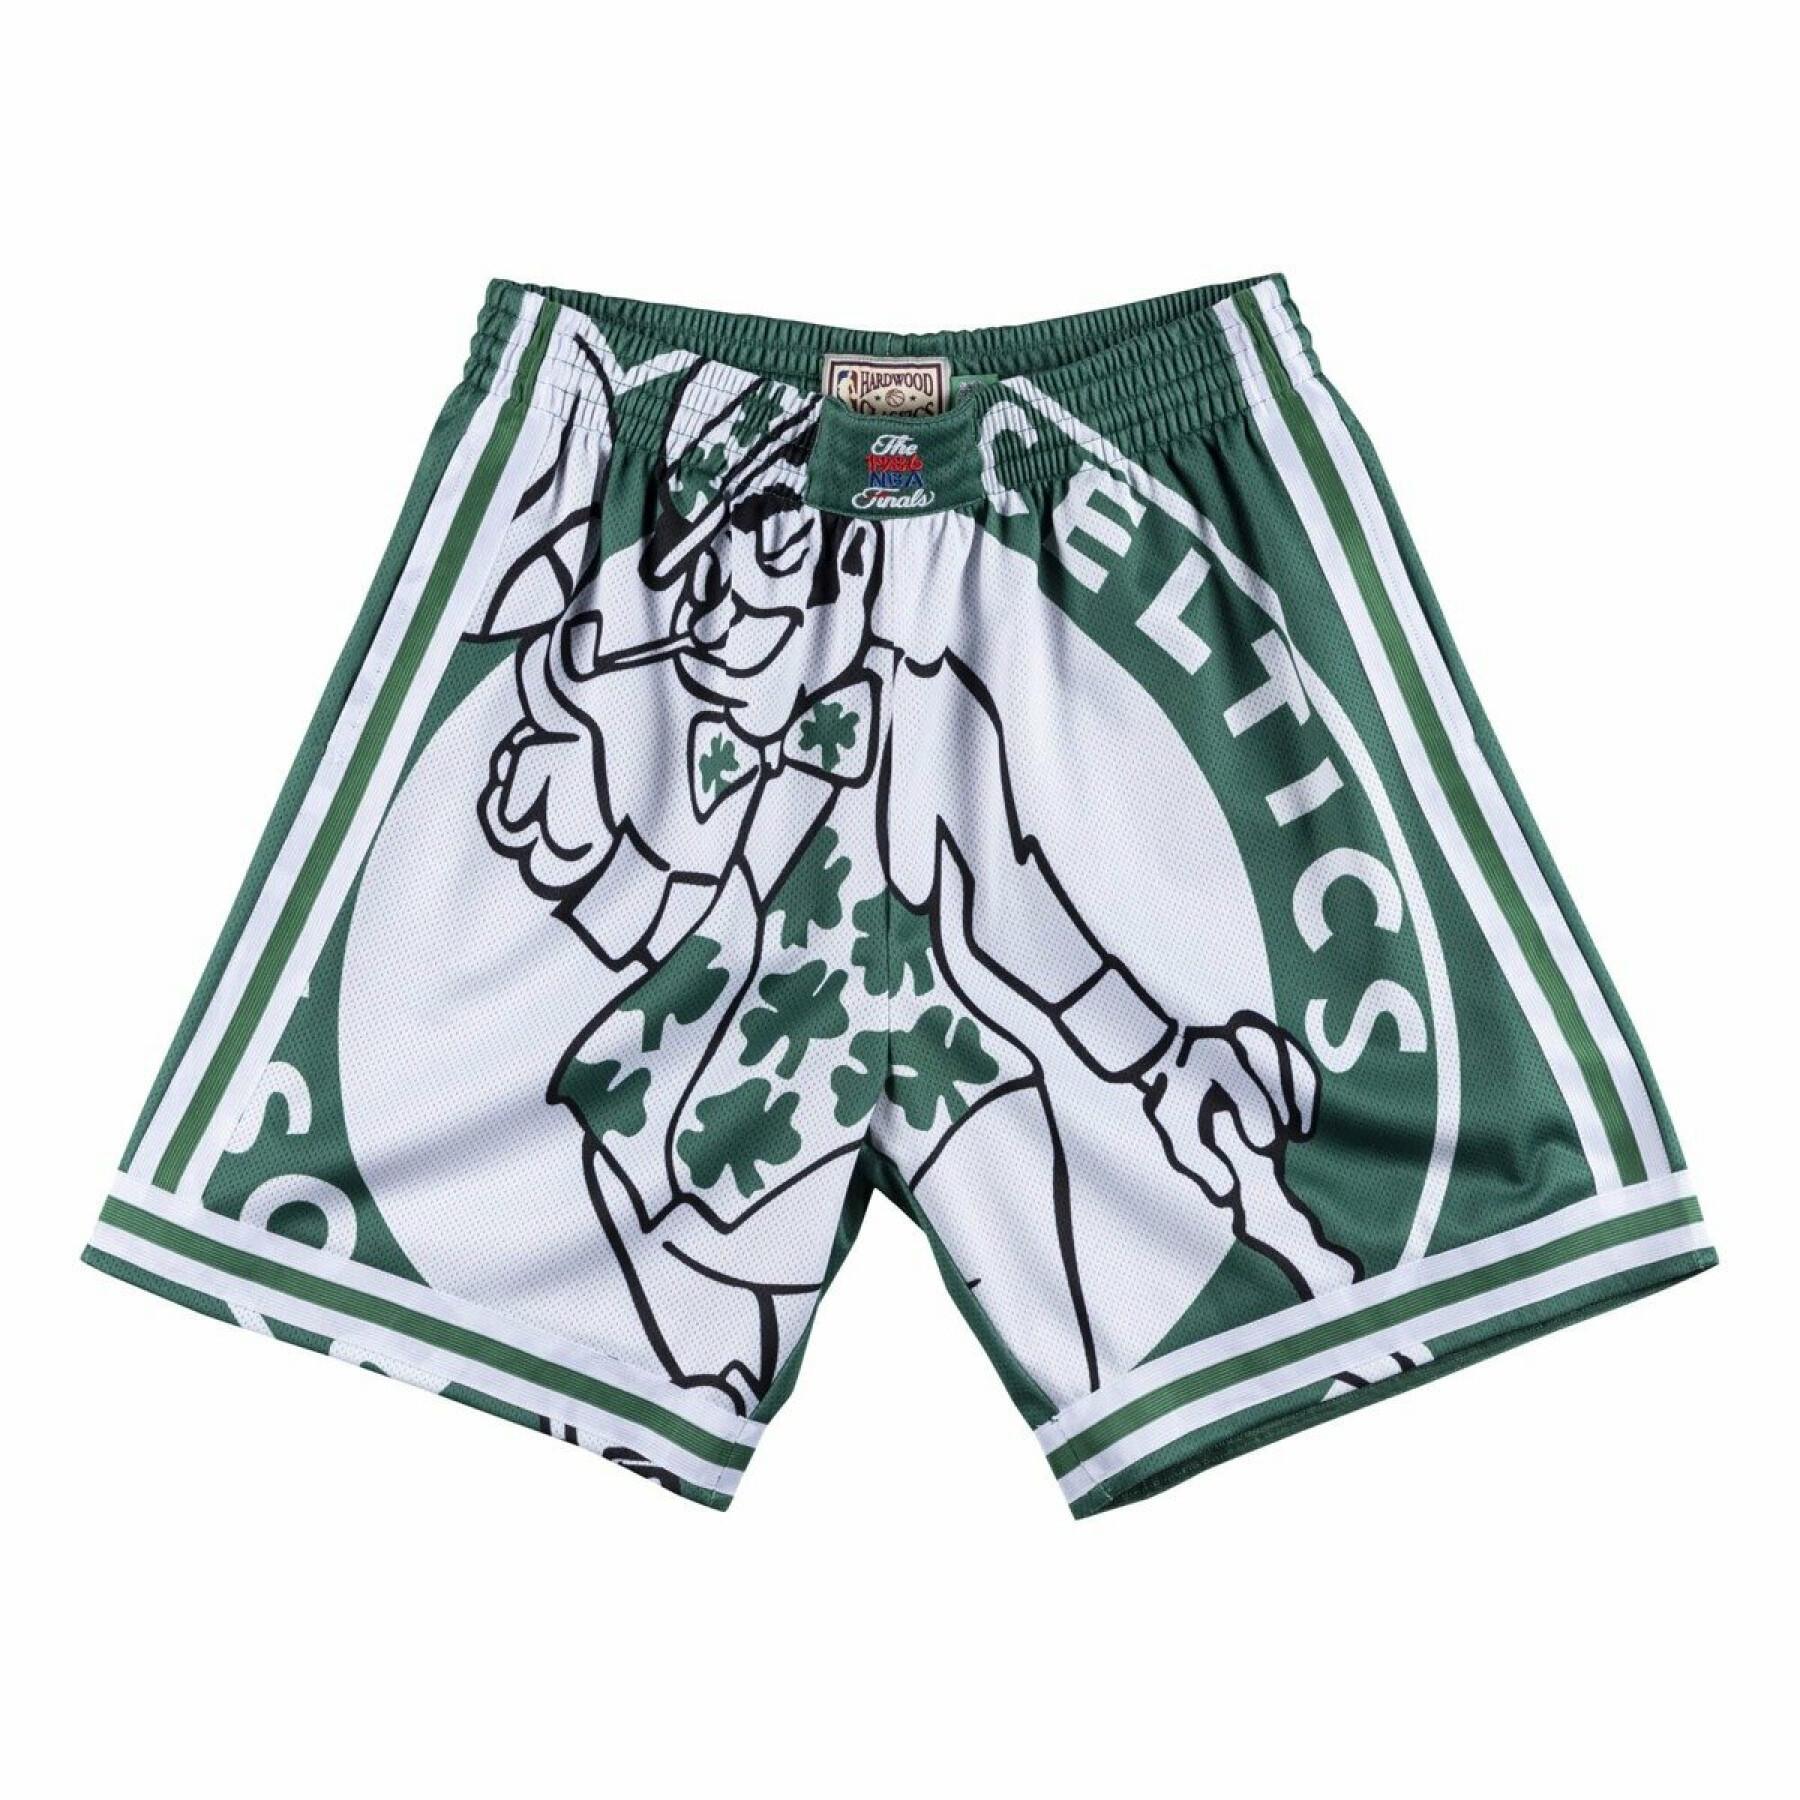 Breve Boston Celtics big face celtics 1985/86